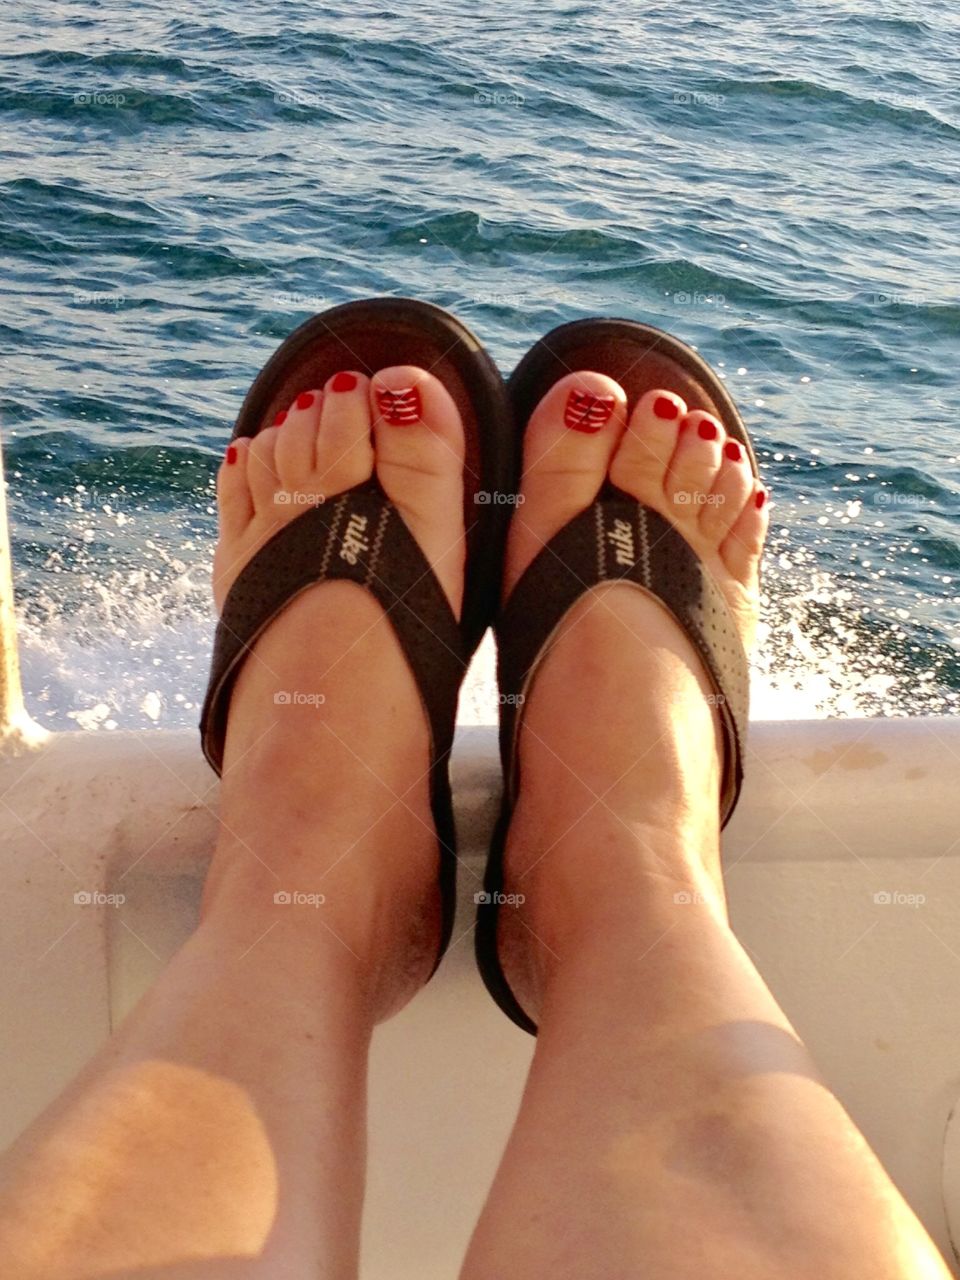 Deep sea fishing toes. 